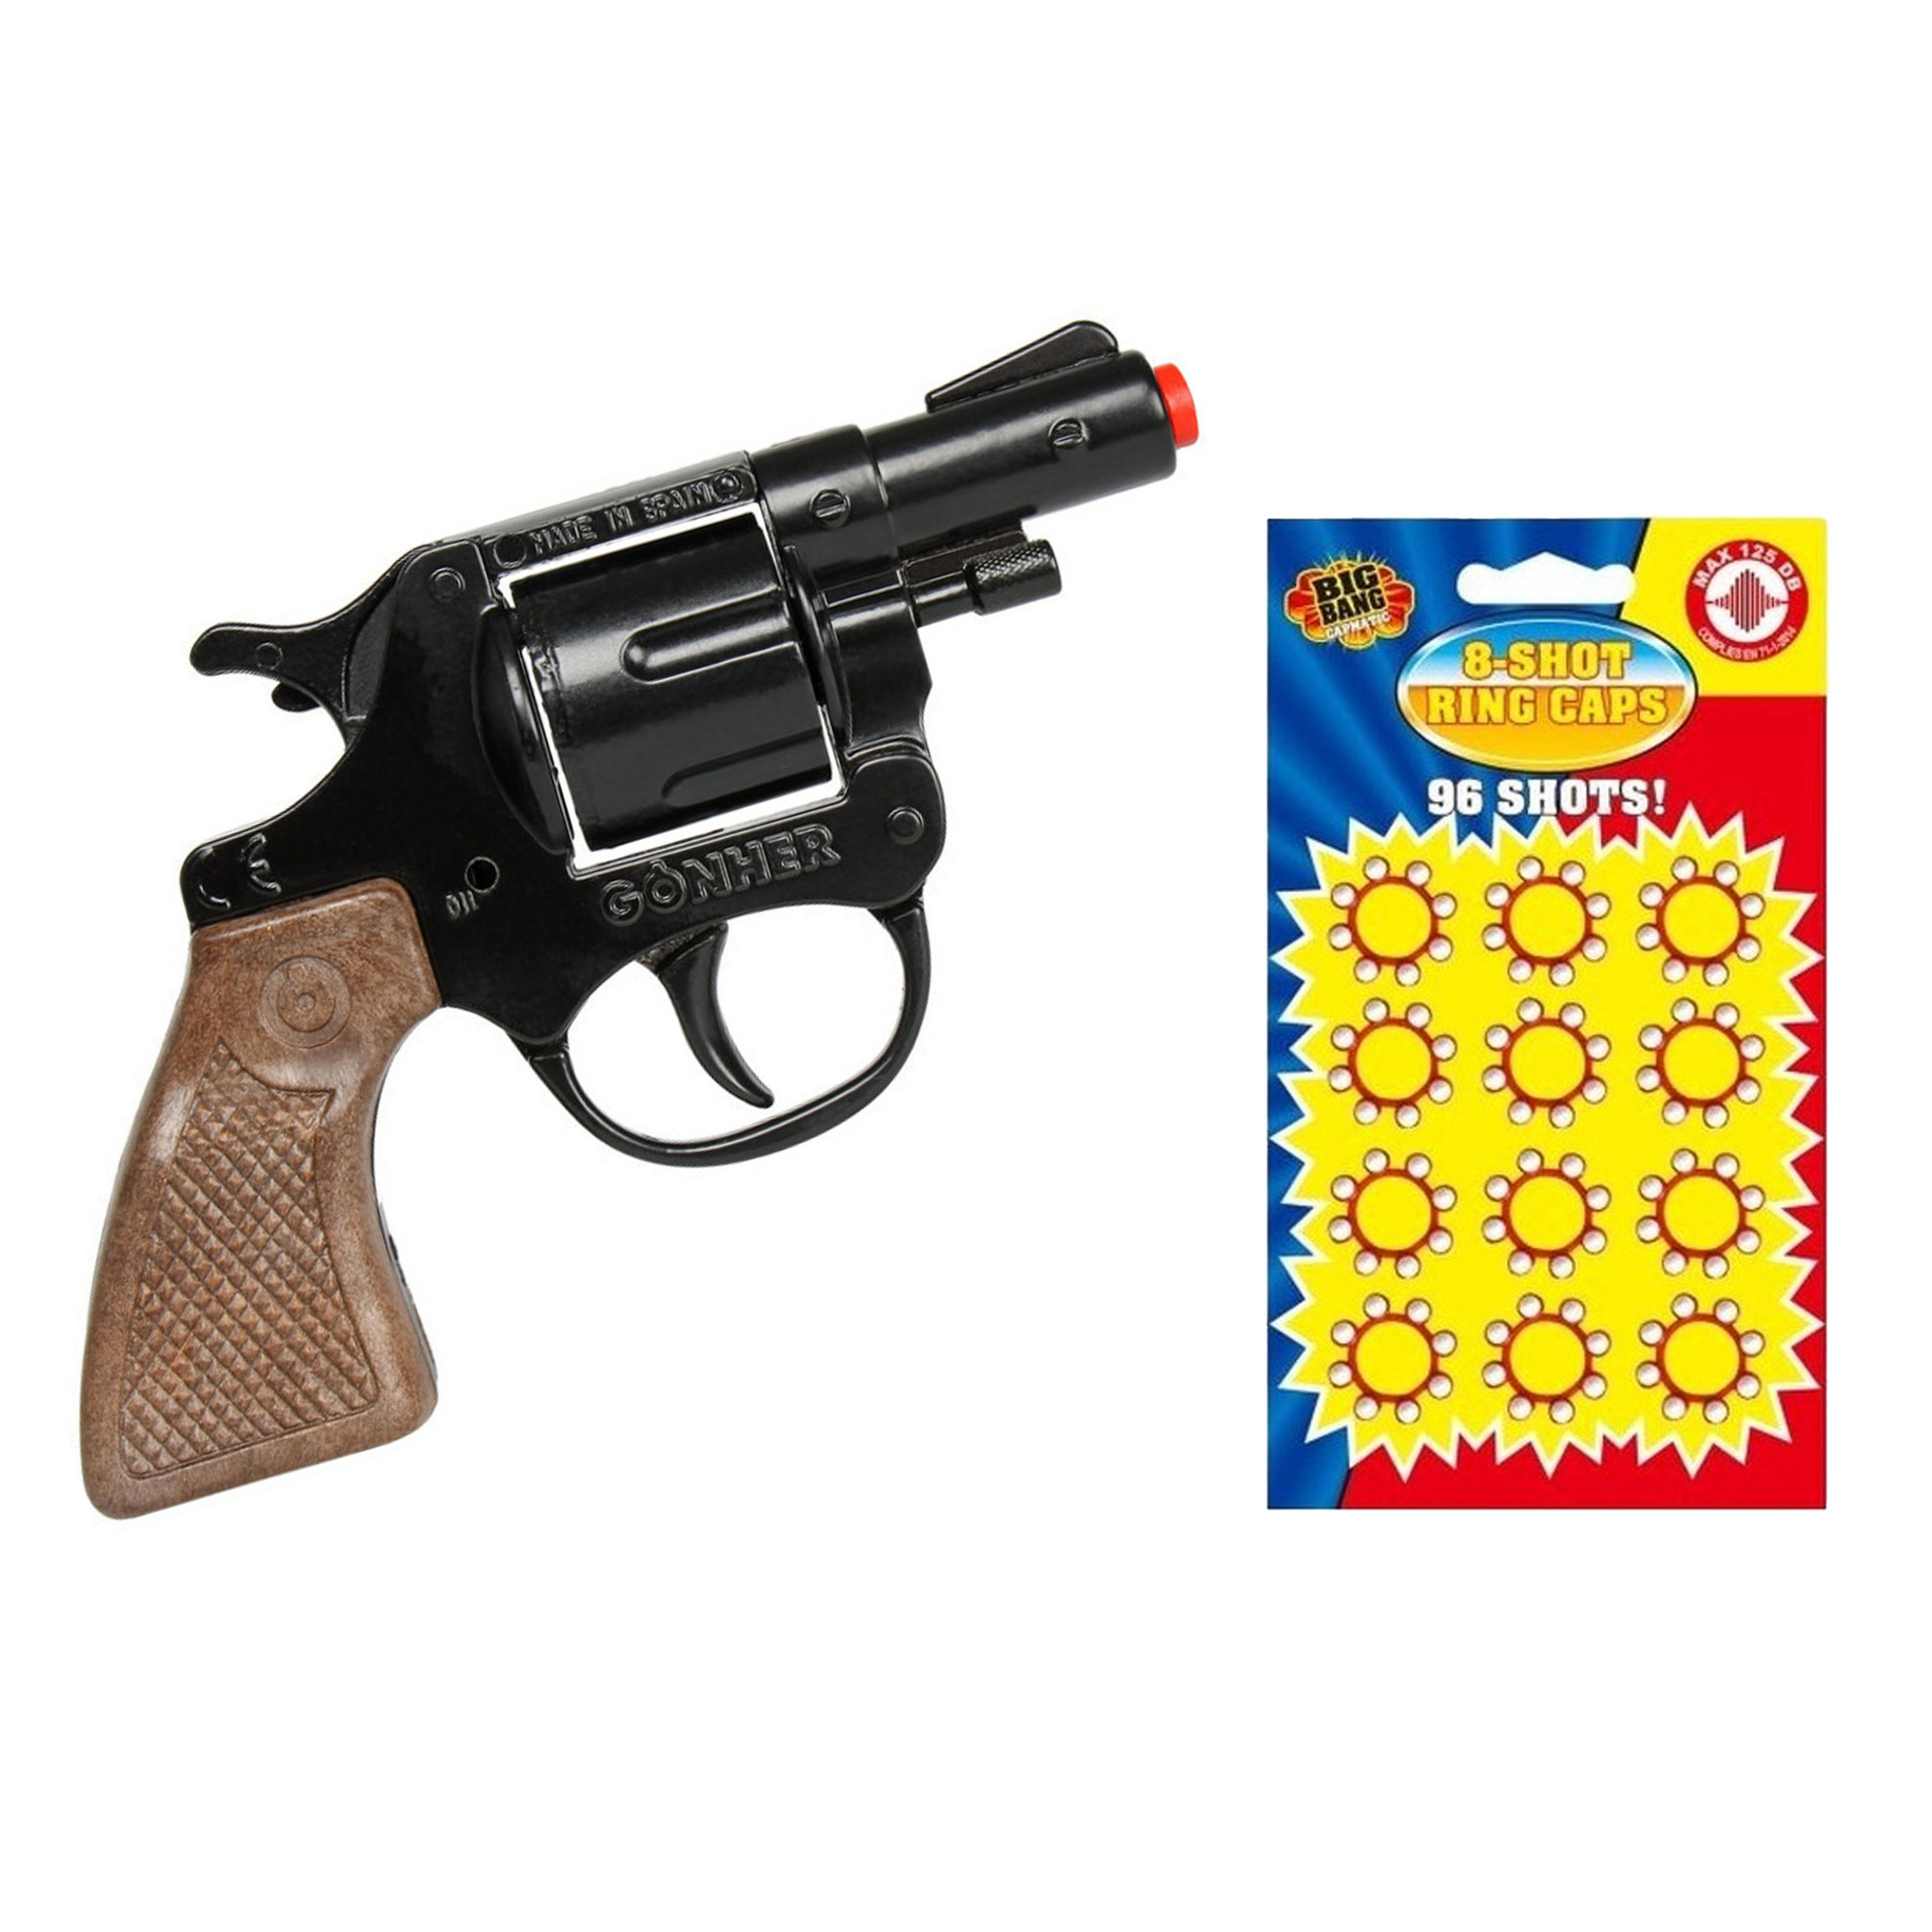 Gohner politie verkleed speelgoed revolver-pistool metaal met 24x ringen 8 schots plaffertjes